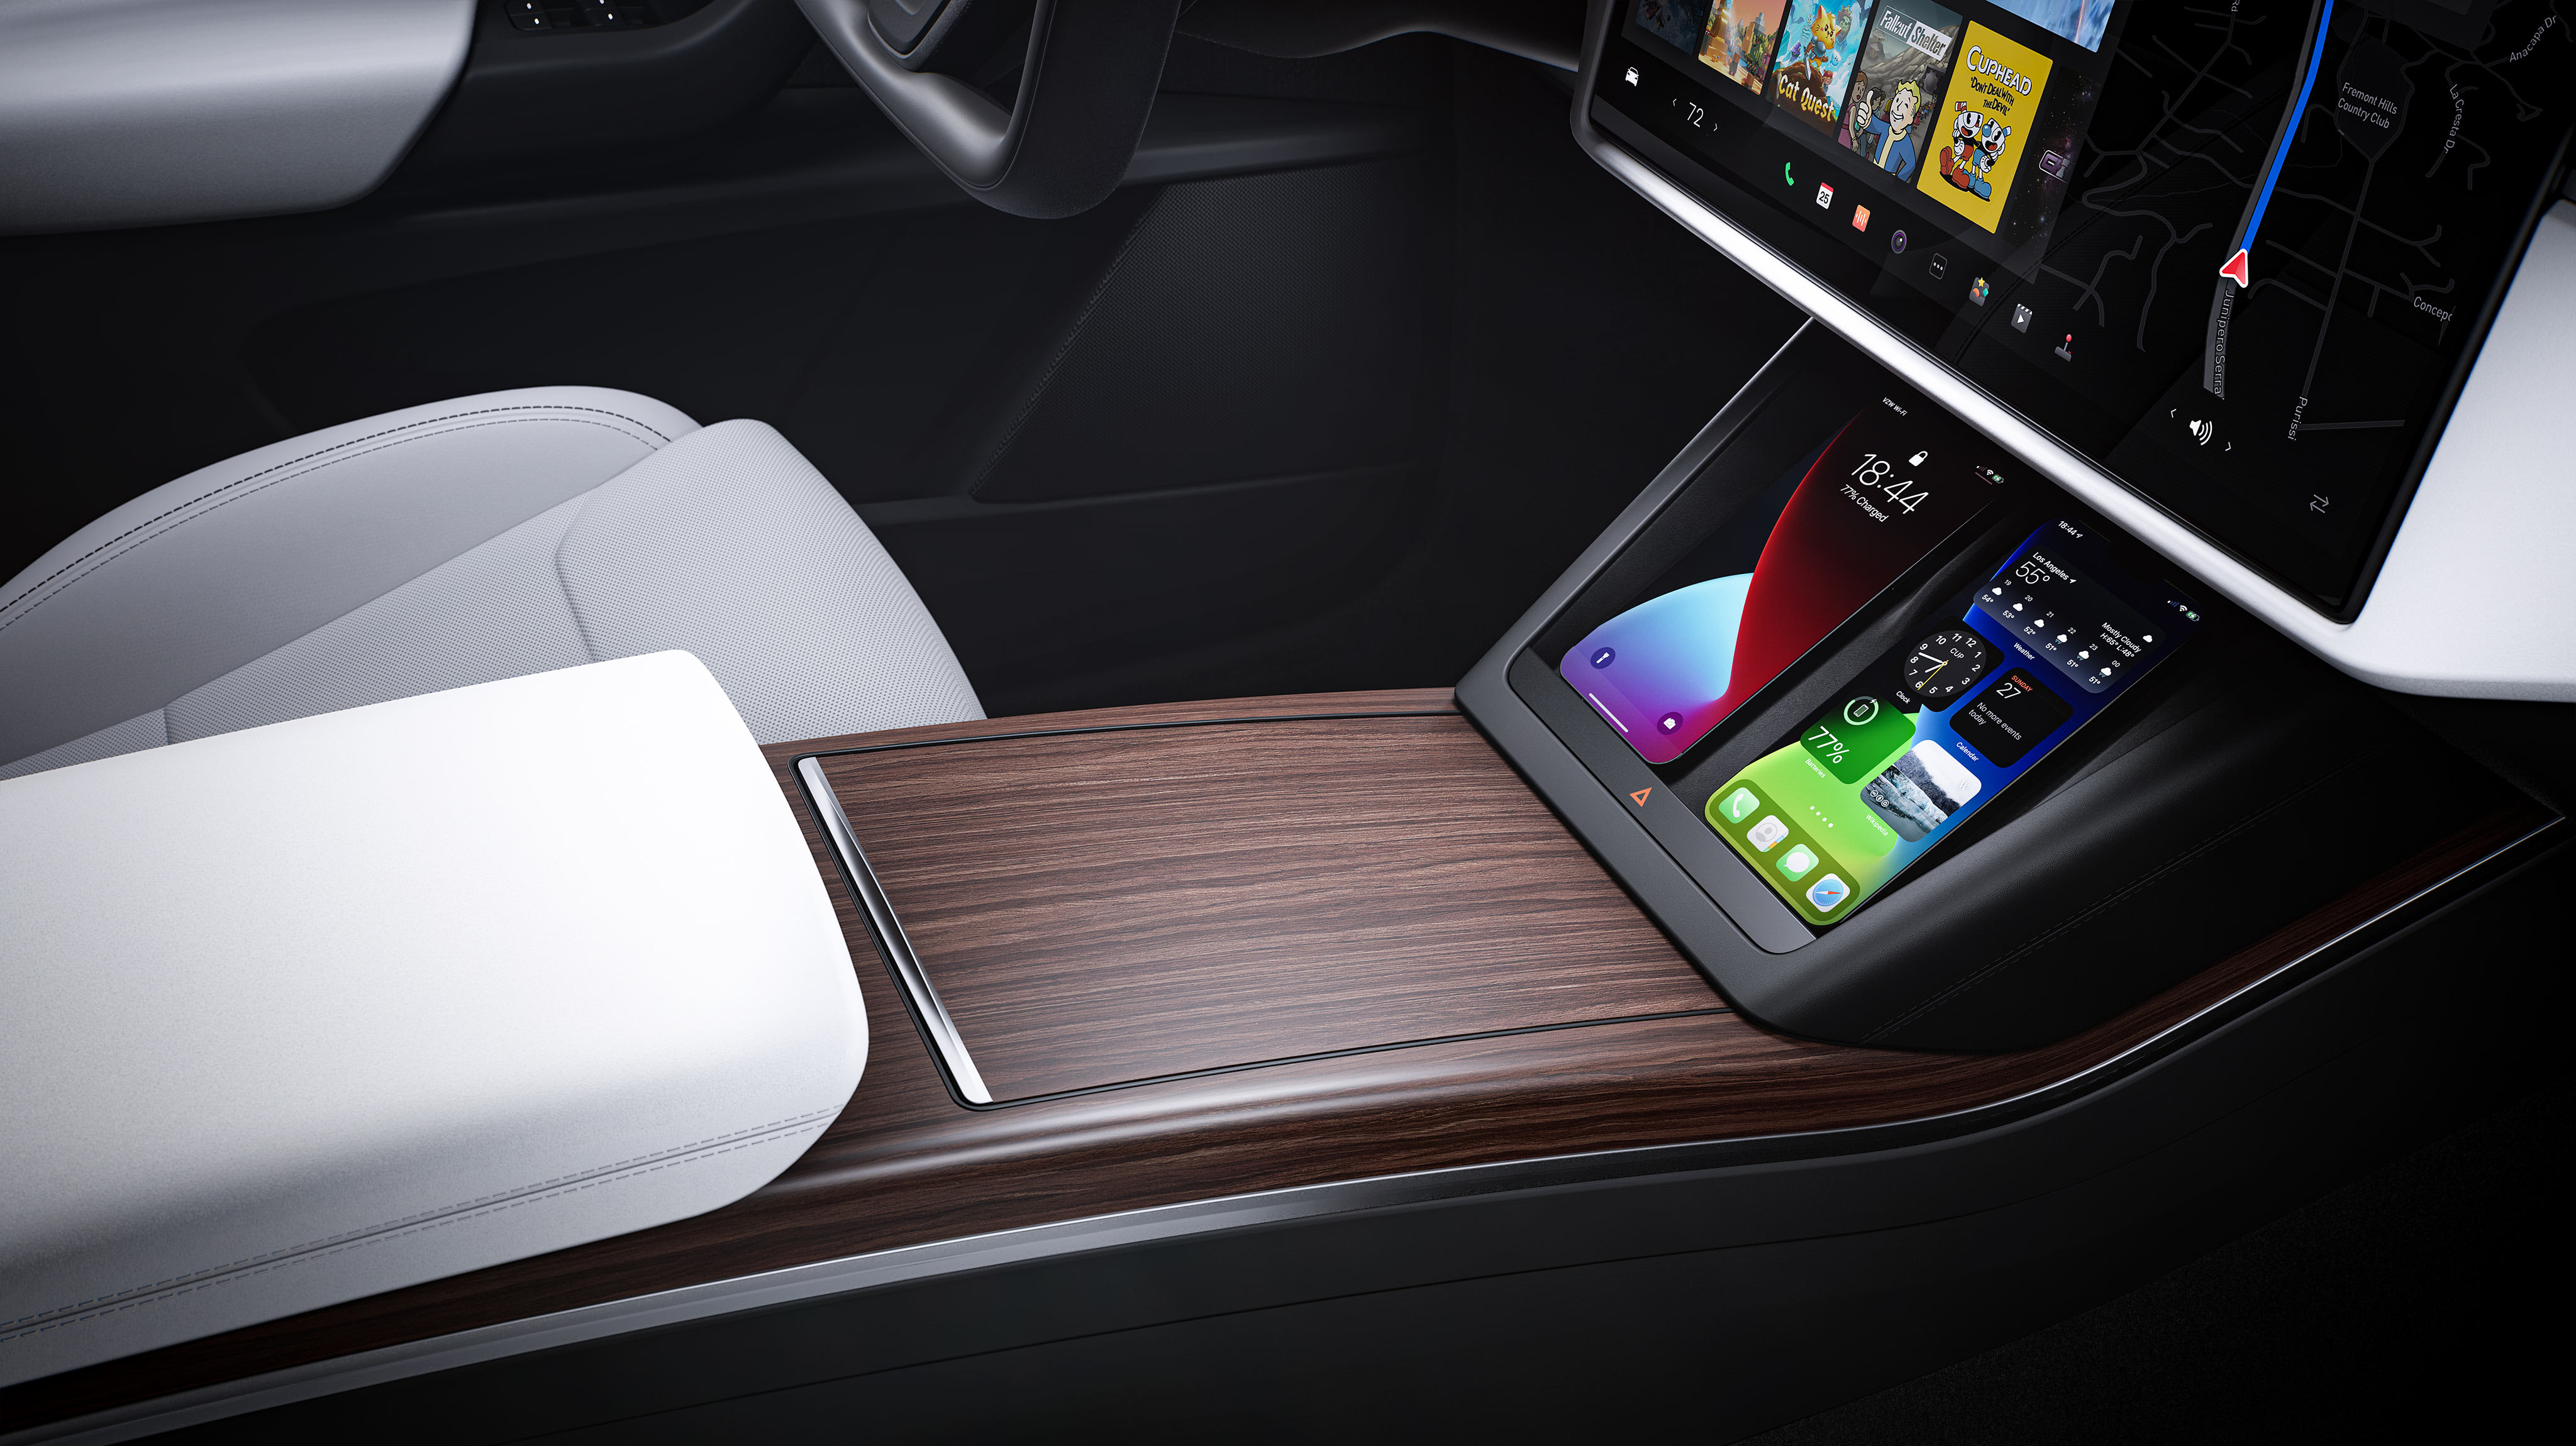 Imagen del interior desde el punto de vista del asiento del pasajero de la consola con dos smartphones cargándose de forma inalámbrica